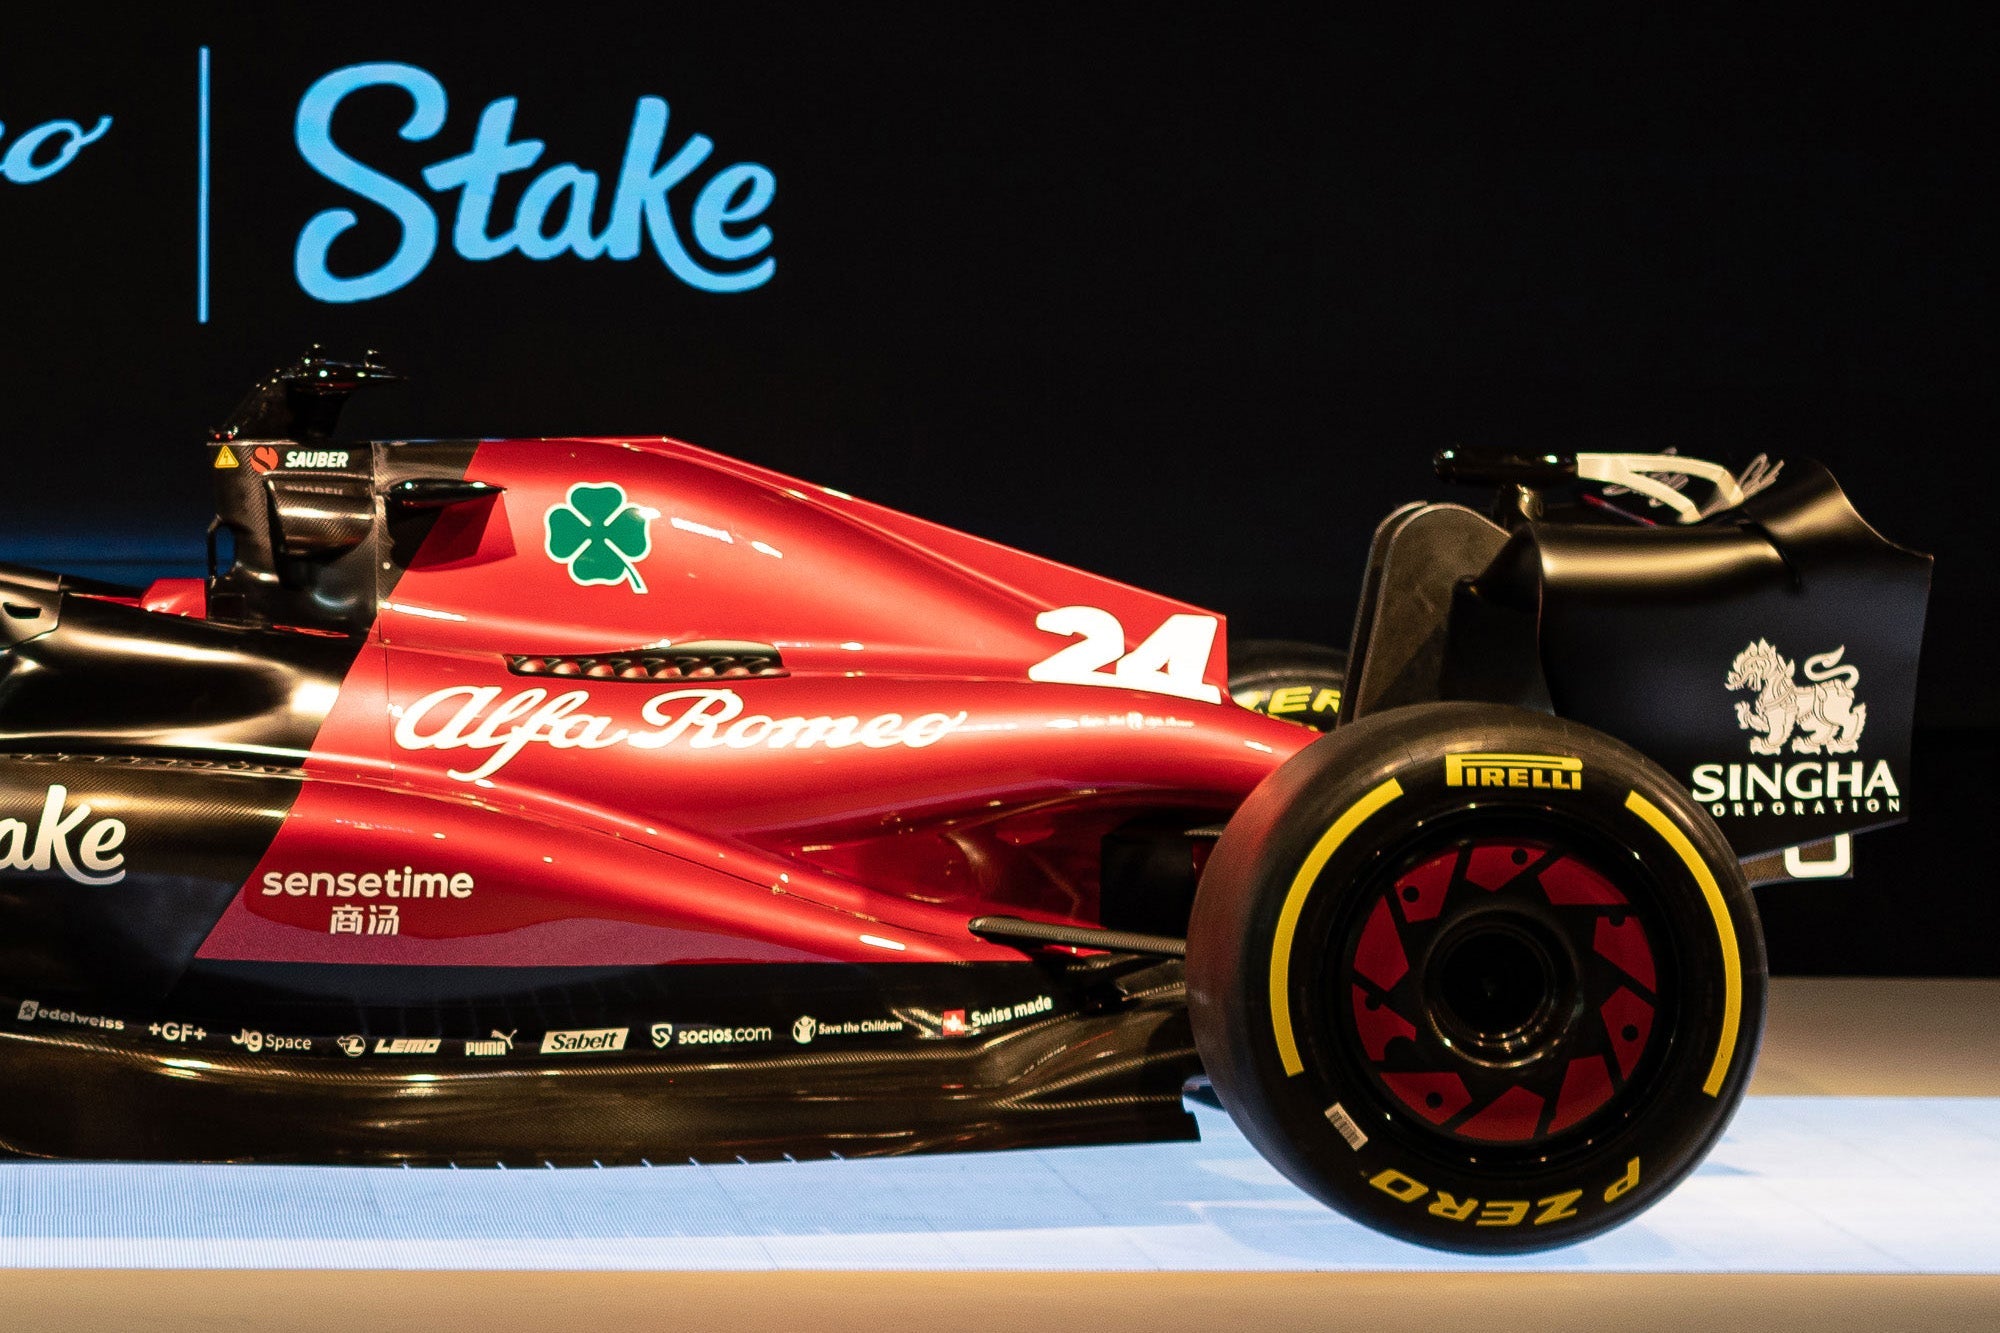 2022 Monaco Grand Prix – Saturday, Alfa Romeo